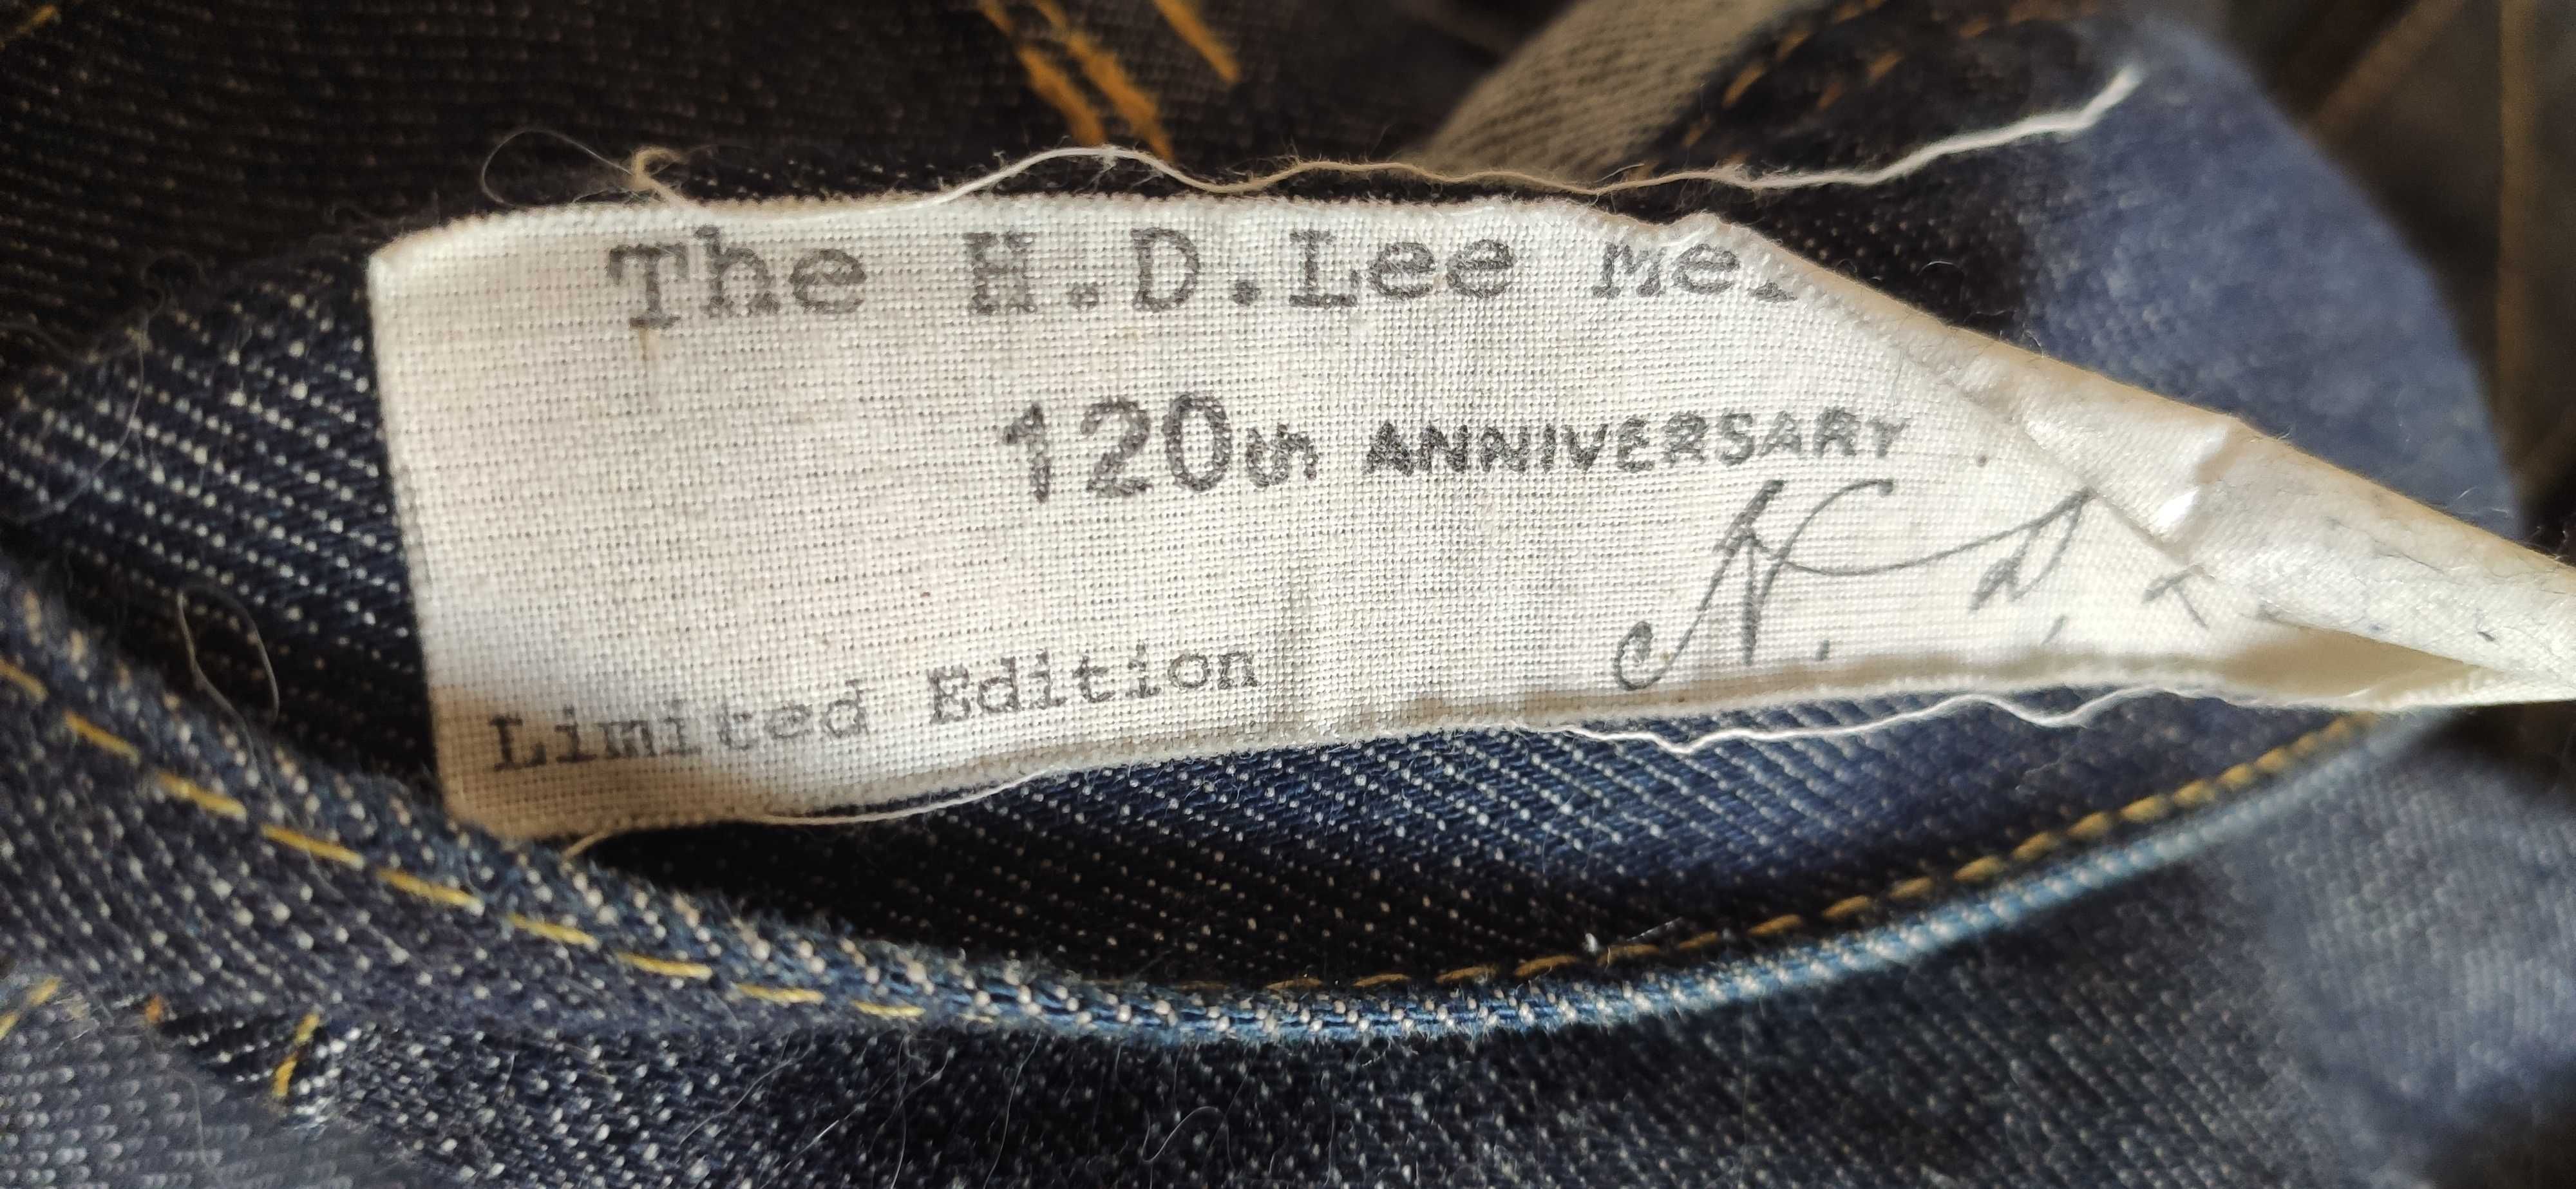 Мужской джинсовый пиджак Lee Rider Jacket. 120 Anniversary.